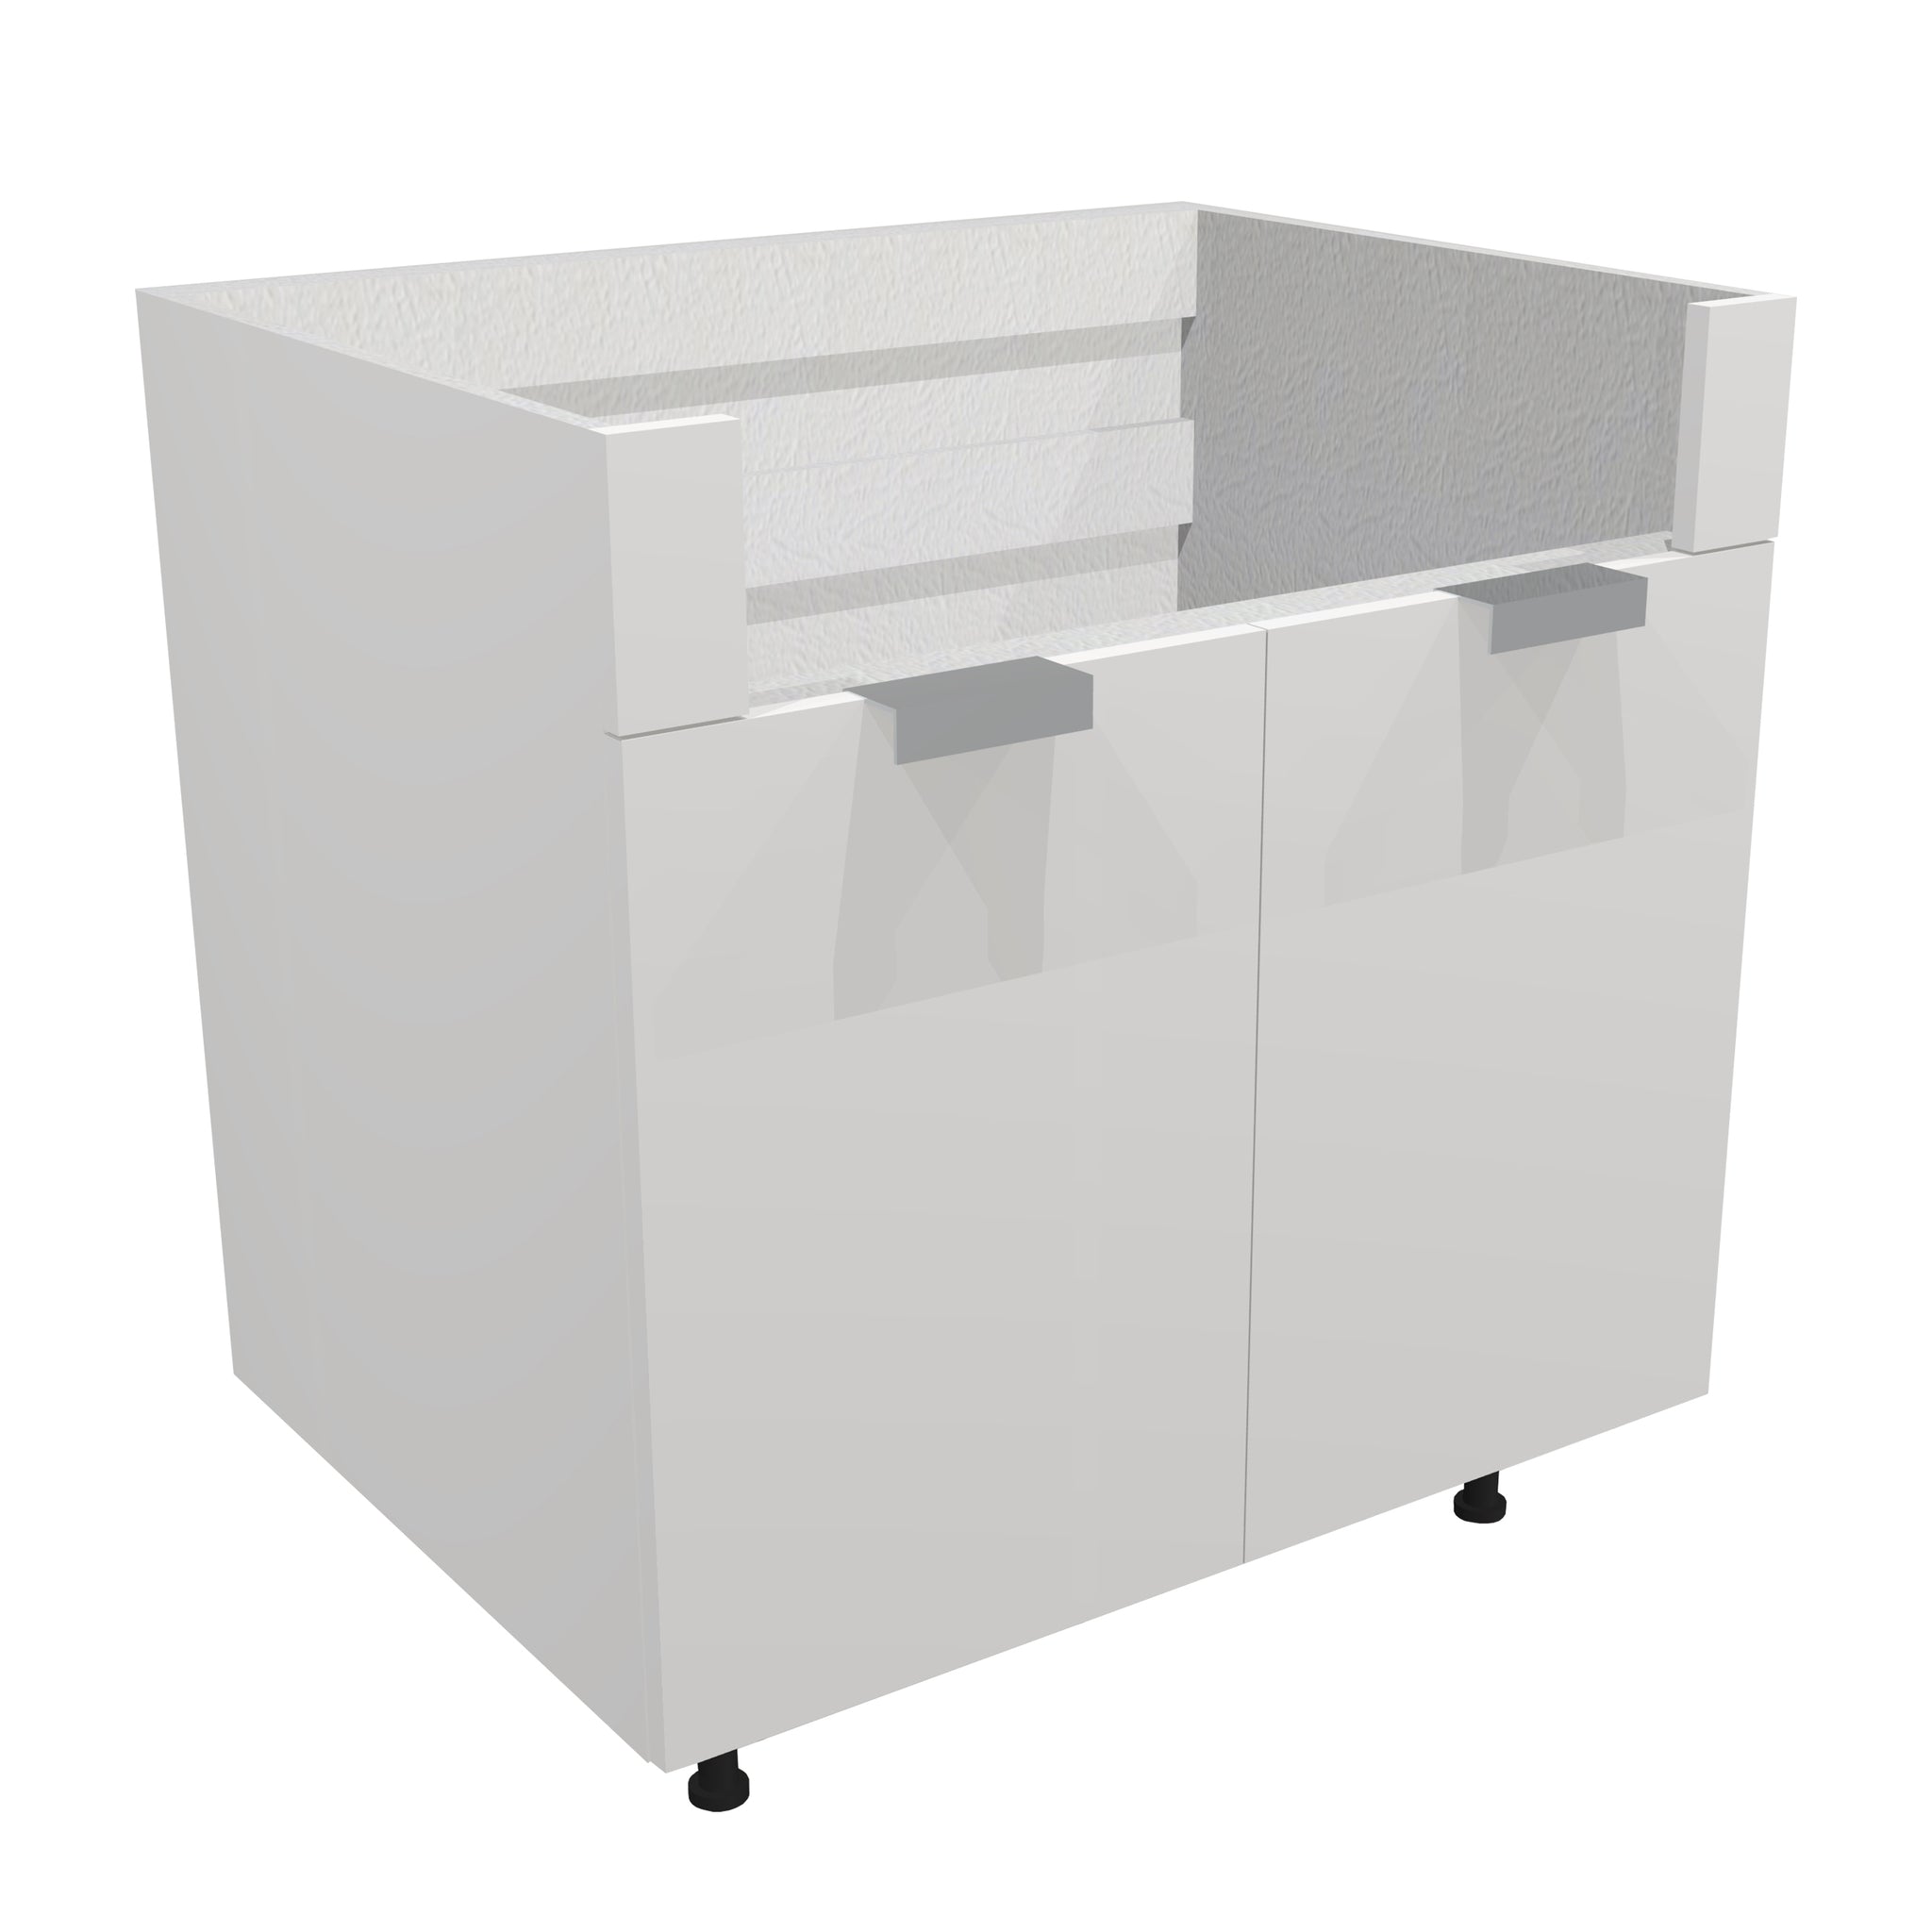 RTA - Glossy White - Apron Sink Base Cabinet | 36"W x 34.5"H x 24"D